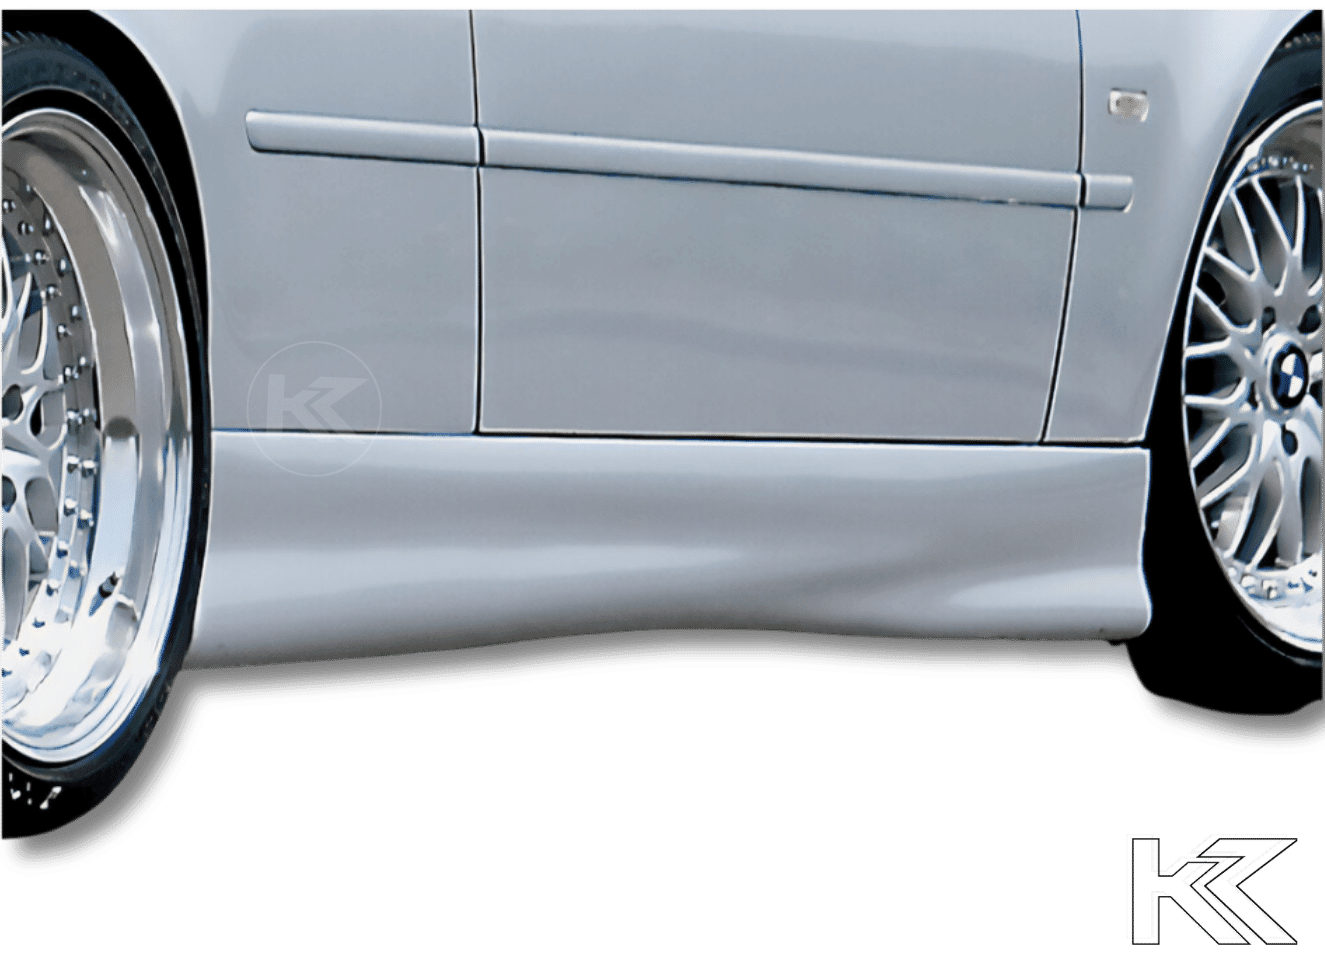 Rieger BMW E46 Convertible Rear Flap Spoiler